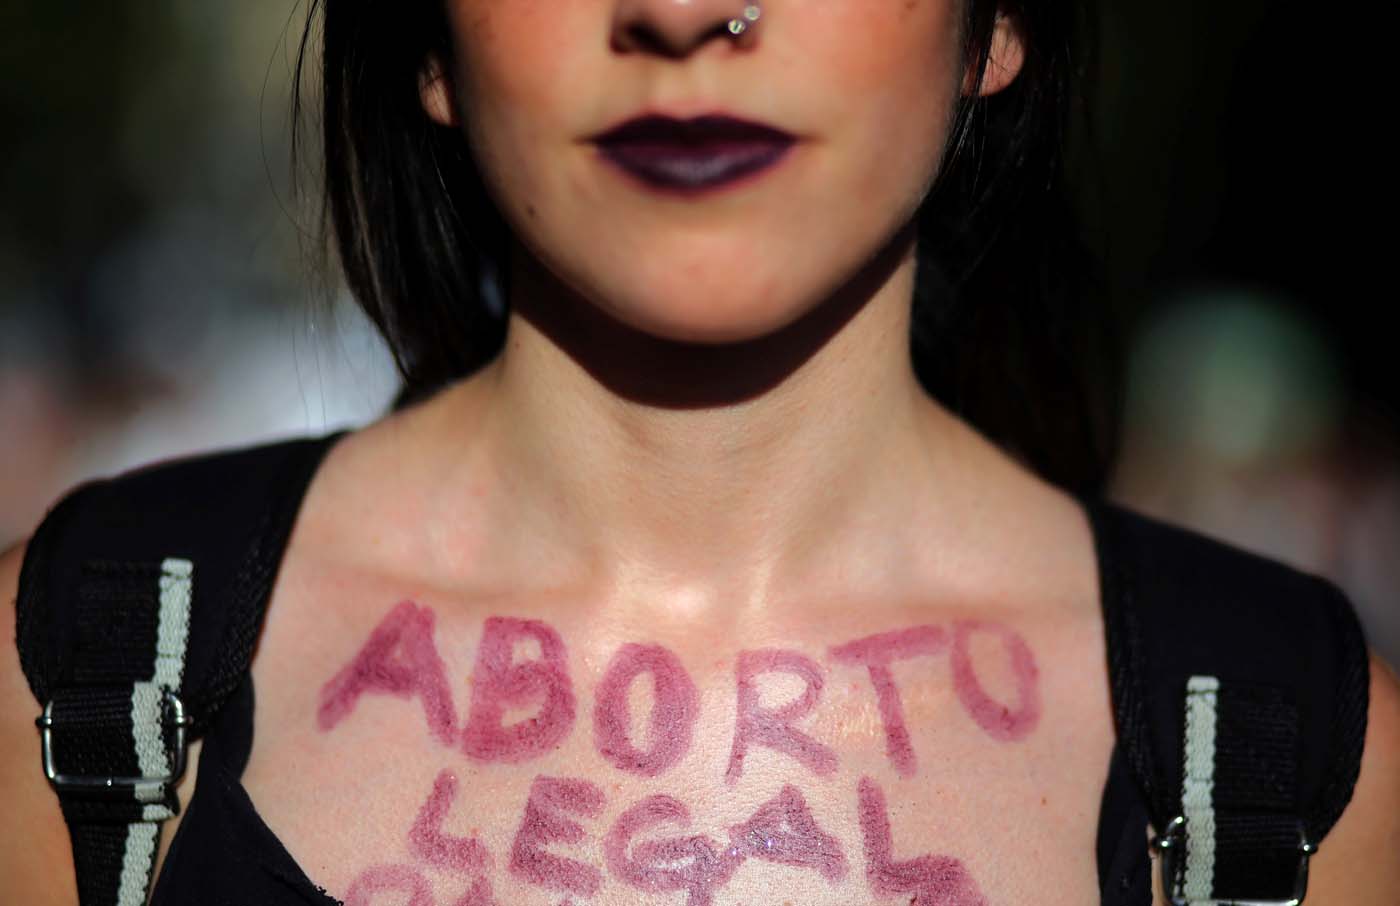 El aborto, un asunto aun polémico en América